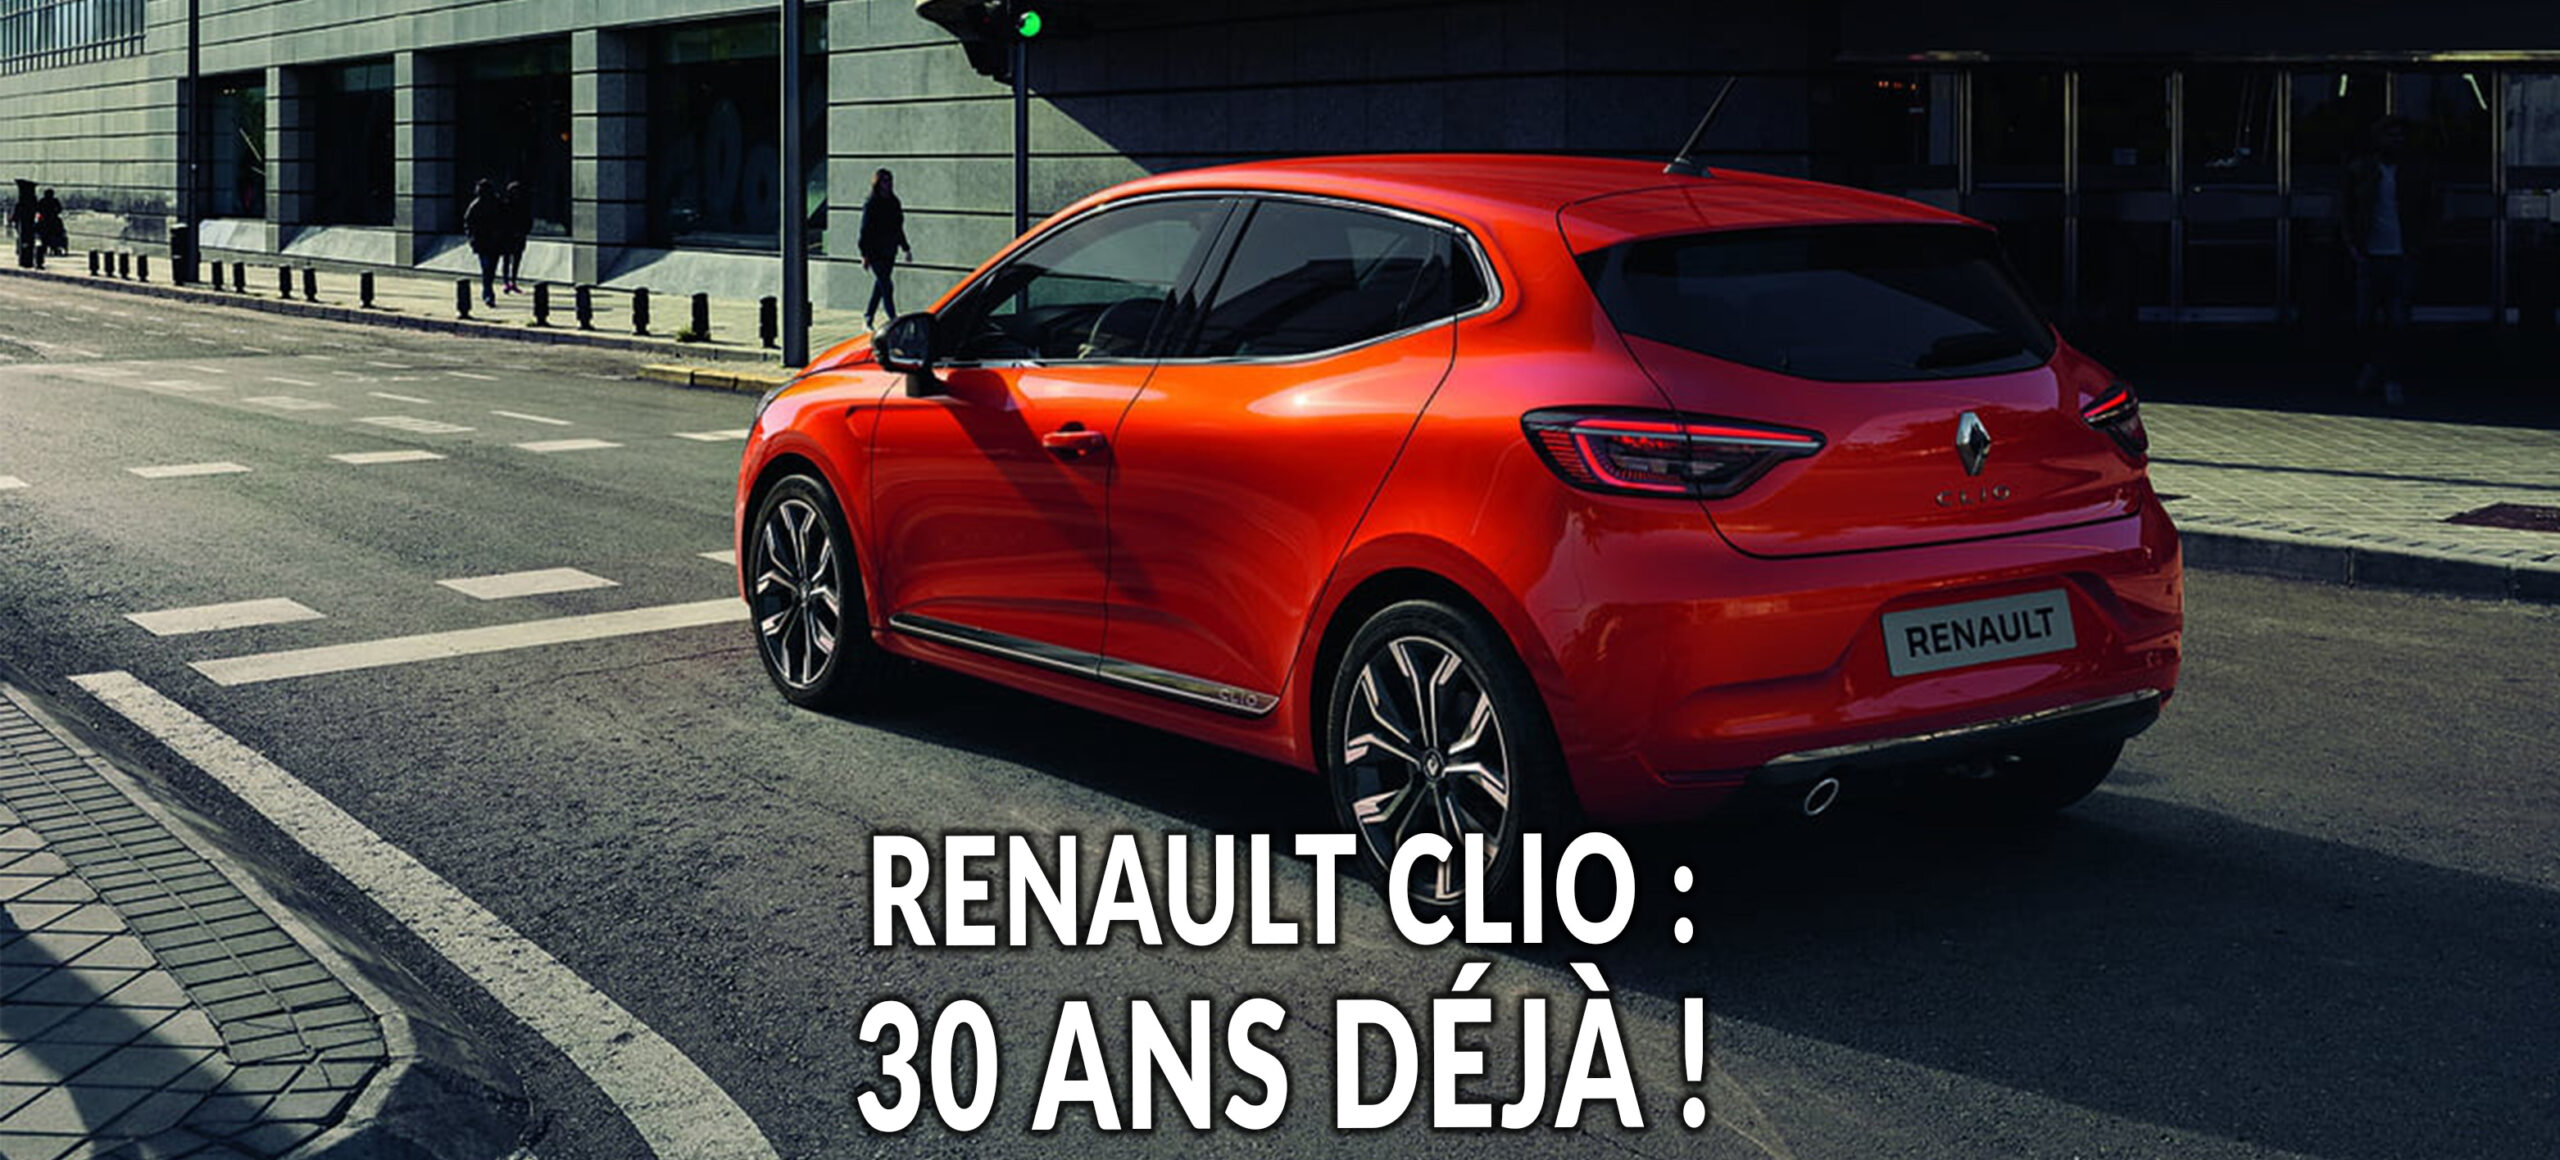 La Renault Clio fête ses 30 ans !